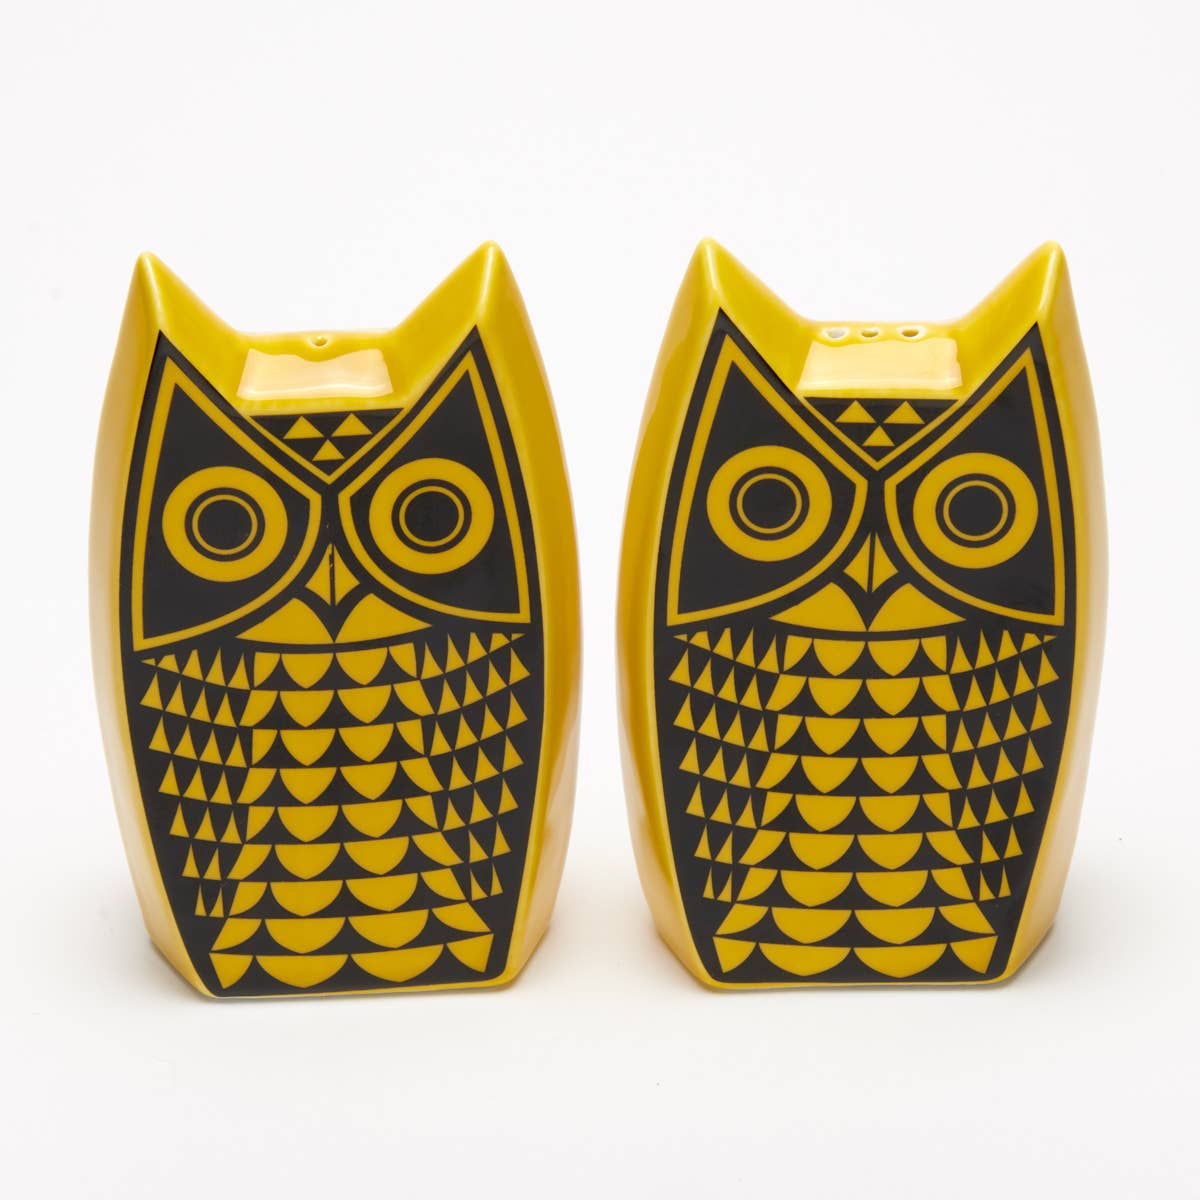 Owl Cruet Set in Yellow by Magpie x Hornsea